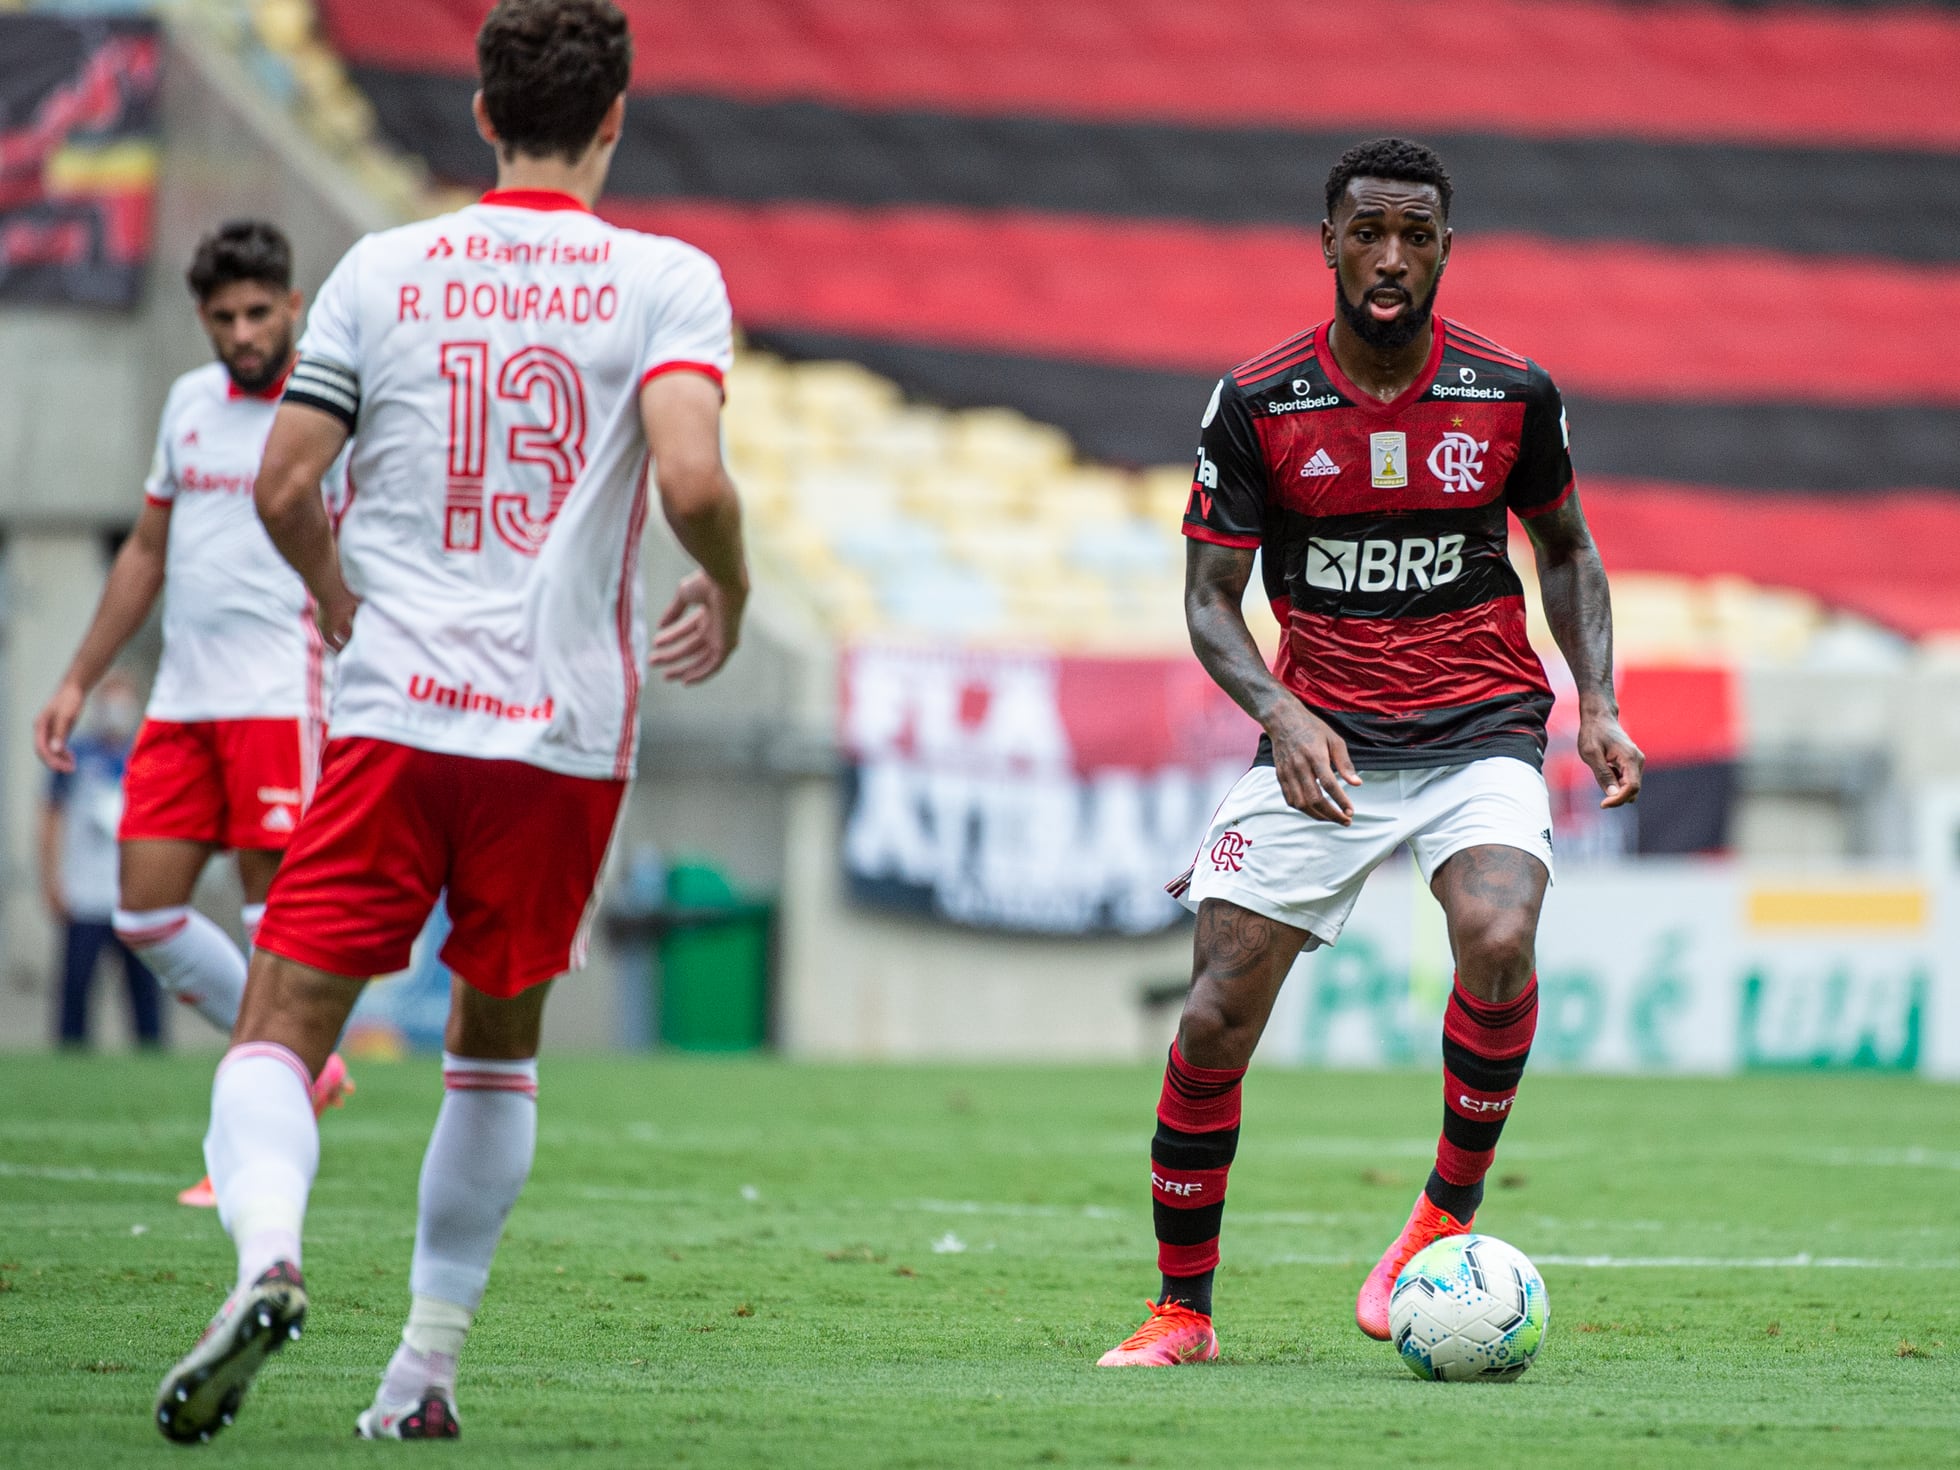 Para buscar título, Flamengo terá cinco jogos 'em casa' no